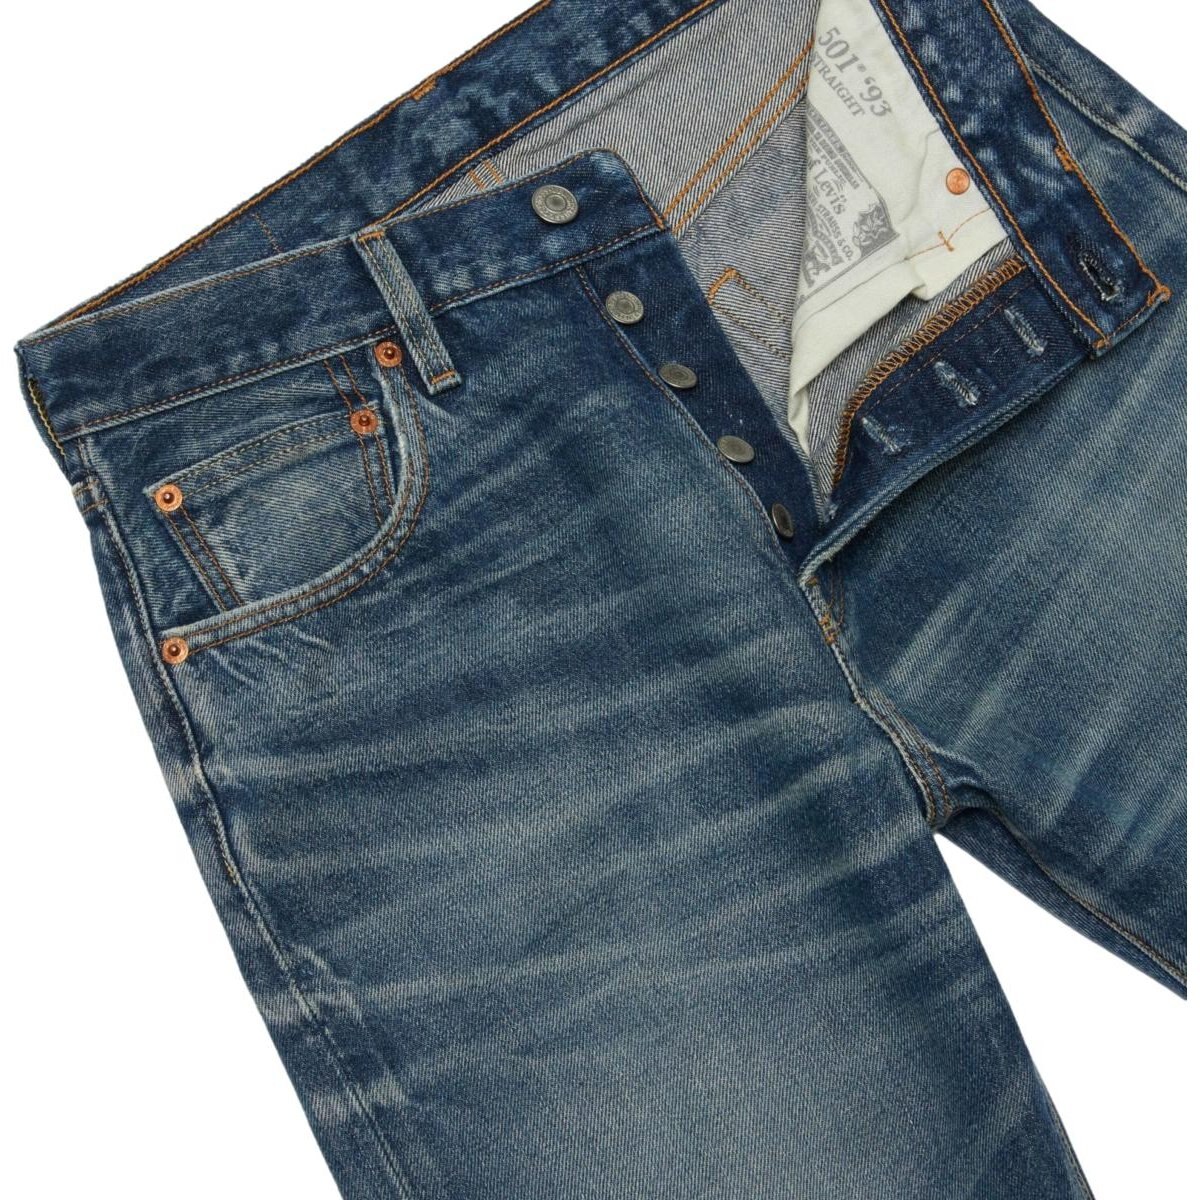 Pantalones Levis 501® Original Pant Azul de Hombre